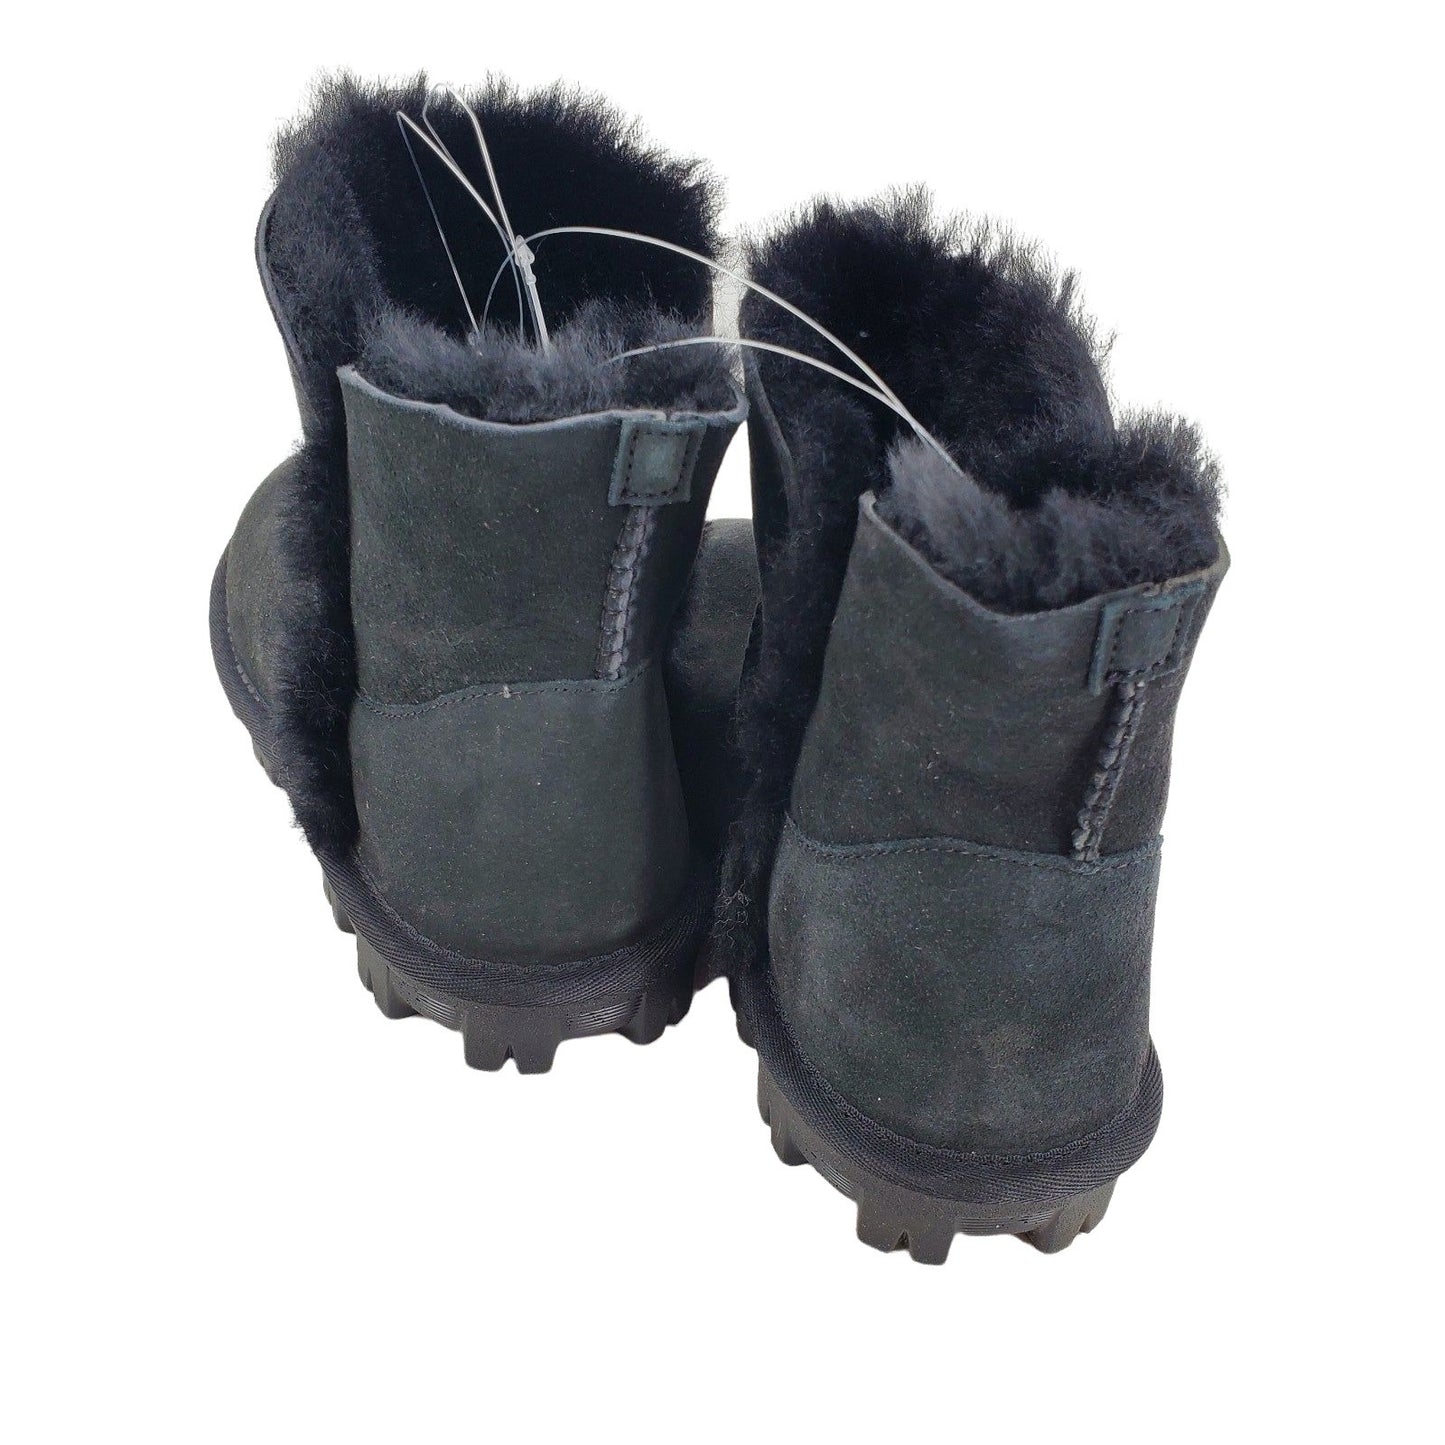 KS 100% Real Fur Boots Women's SHEARLING Sheepskin Suede shoe